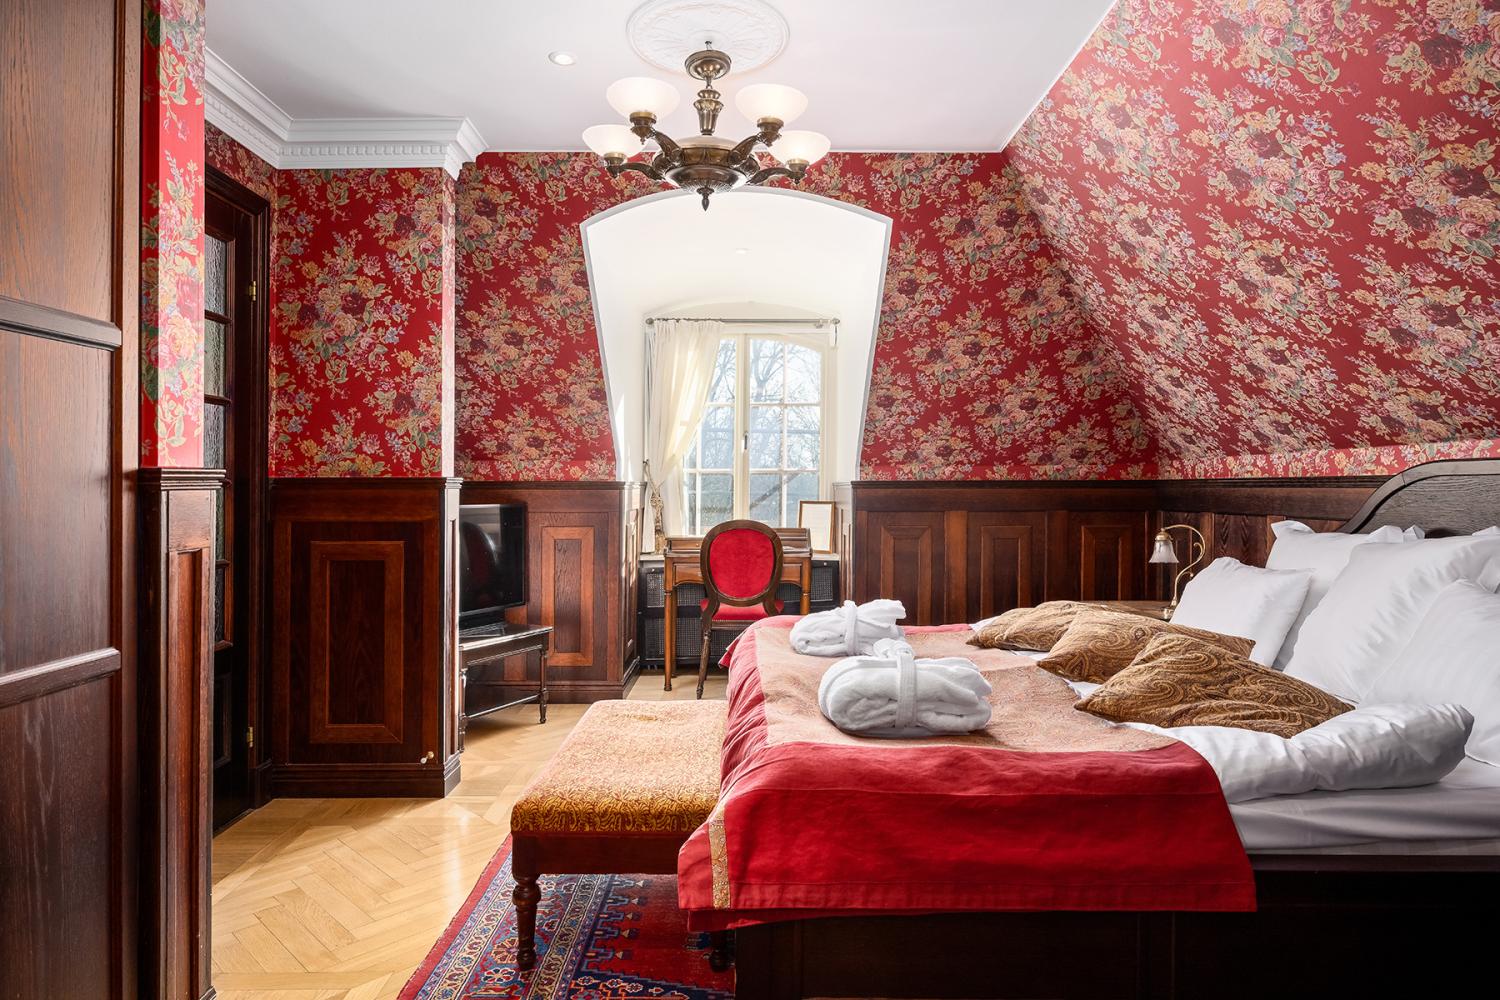 Sovrummet i Ivar Kreuger-rummet